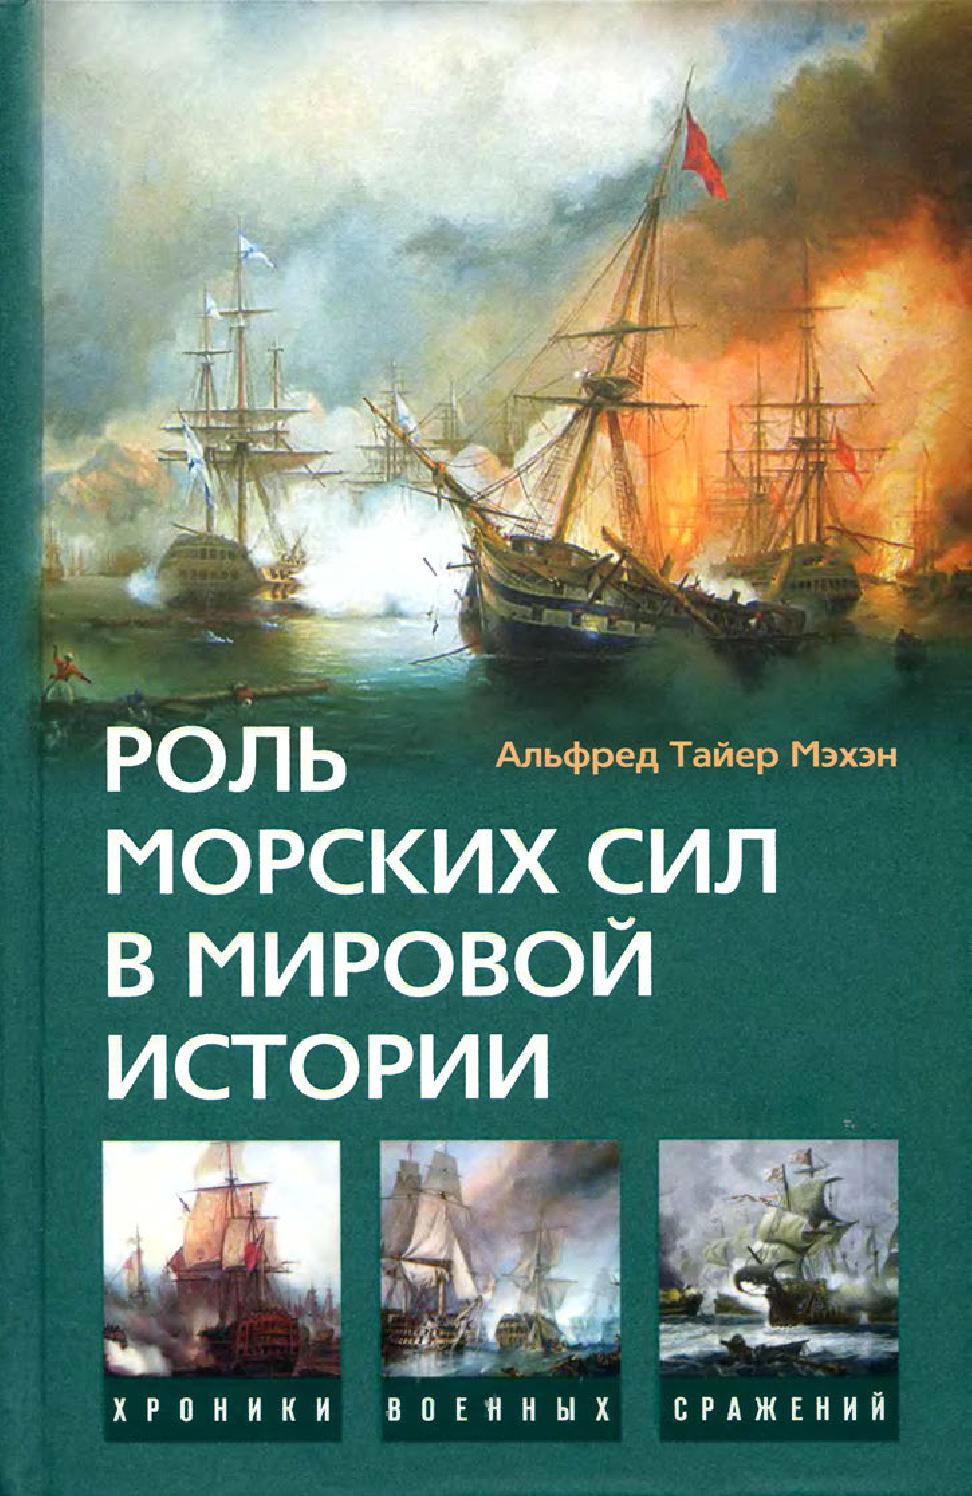 Роль морских сил в мировой истории. Часть 2, 2008, Мэхэн А.Т.